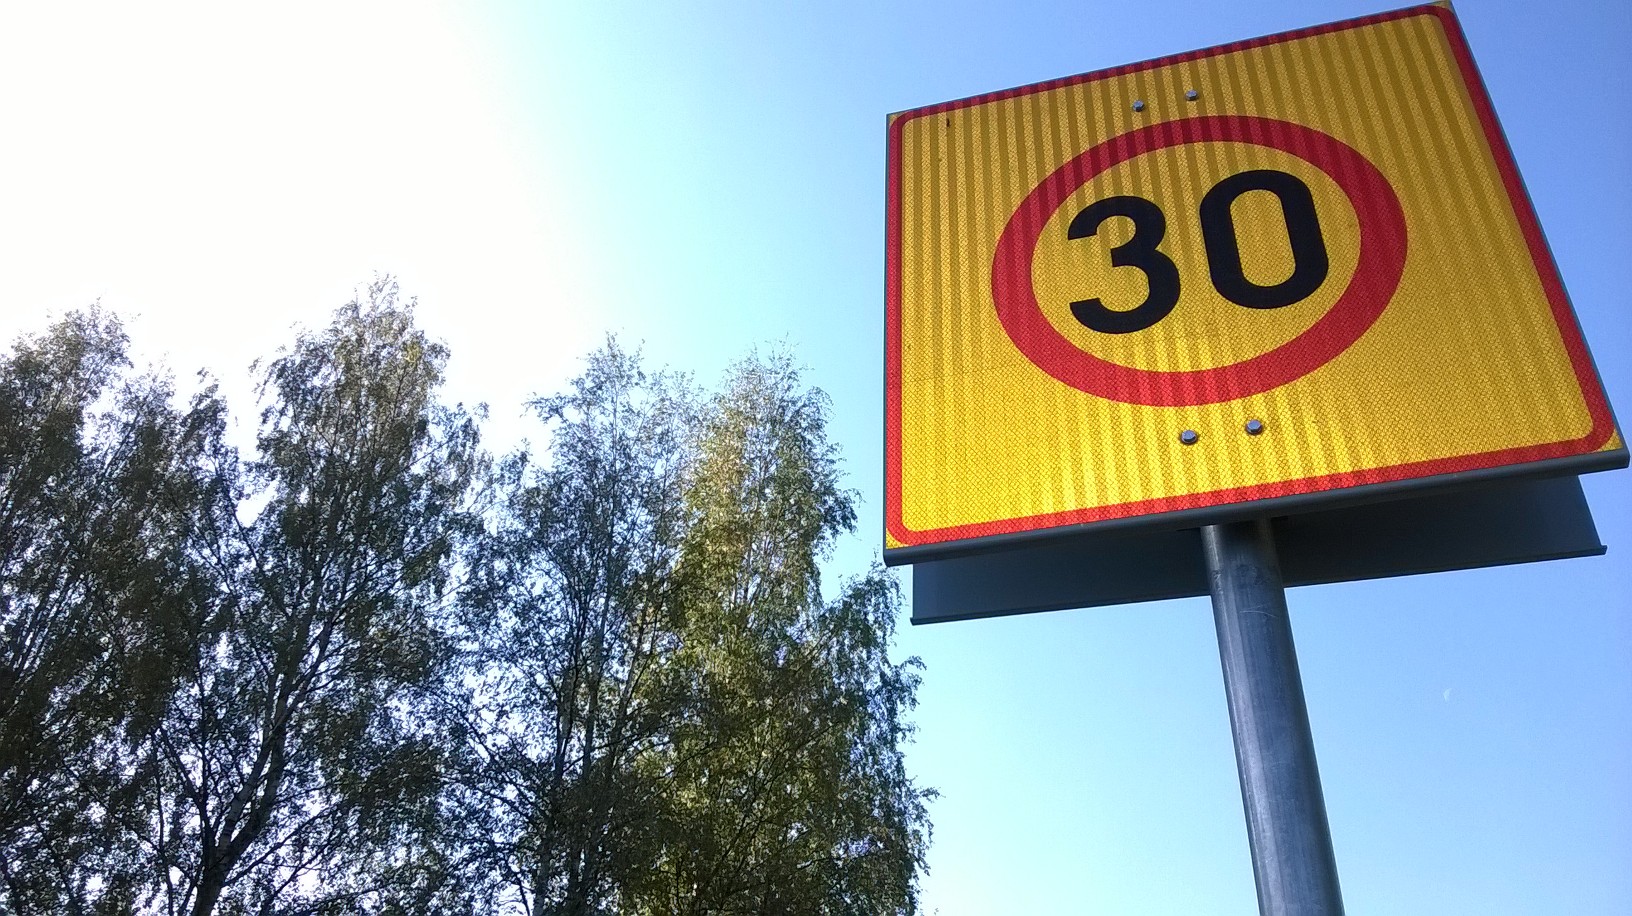 La Agencia de Seguridad de Finlandia pide un aumento de los límites de velocidad de 30 km/h en las carreteras finlandesas